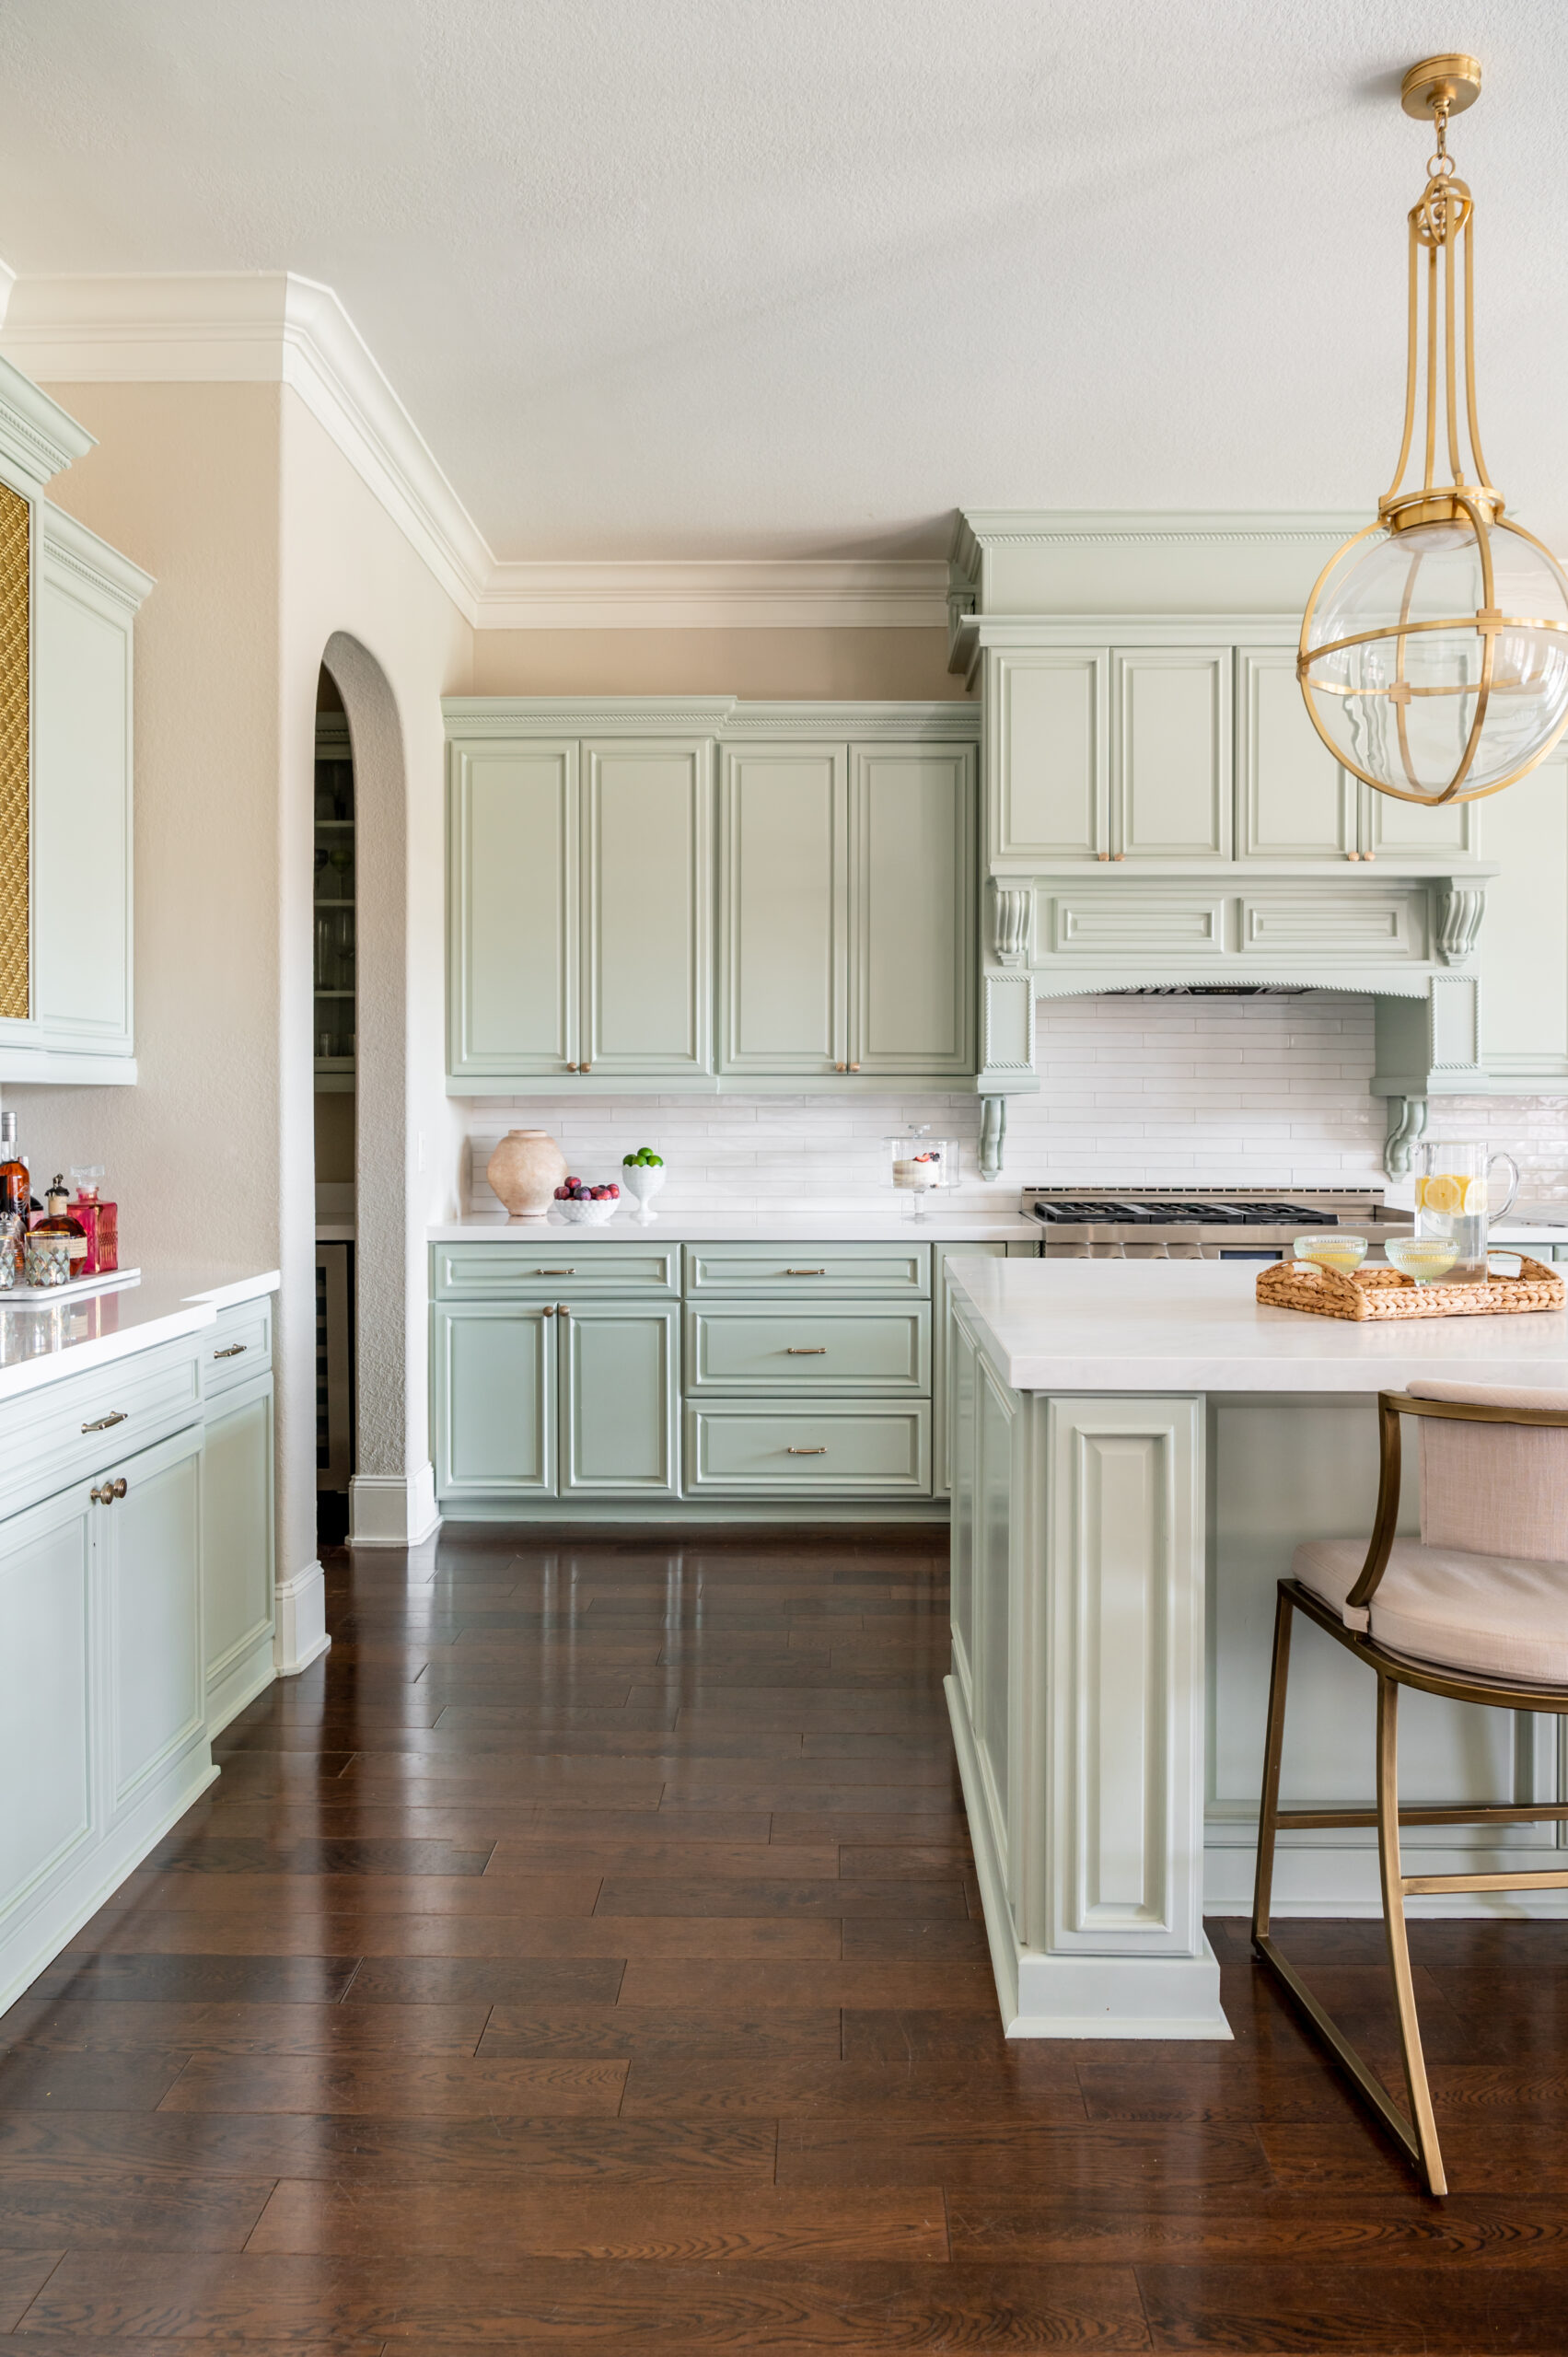 Houston Interior Designer, Sarah Becker’s kitchen interior design photoshoot